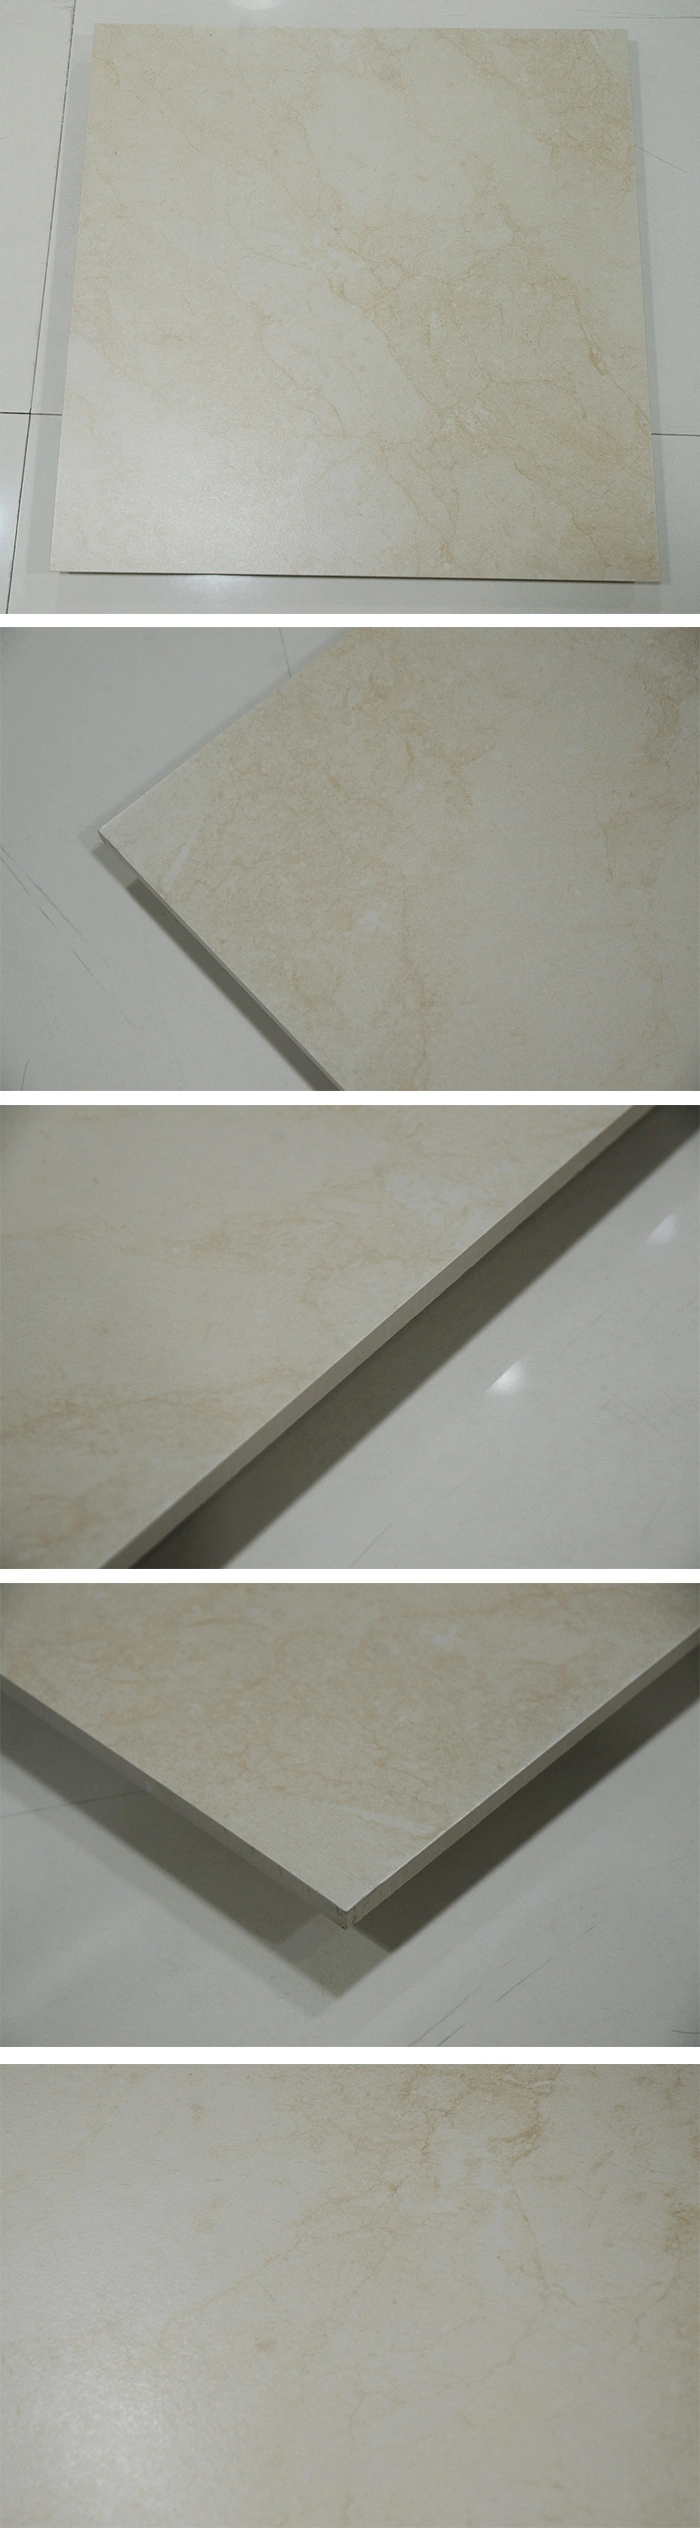 600X600 Foshan Factory Beige Rustic Bathroom Tiles